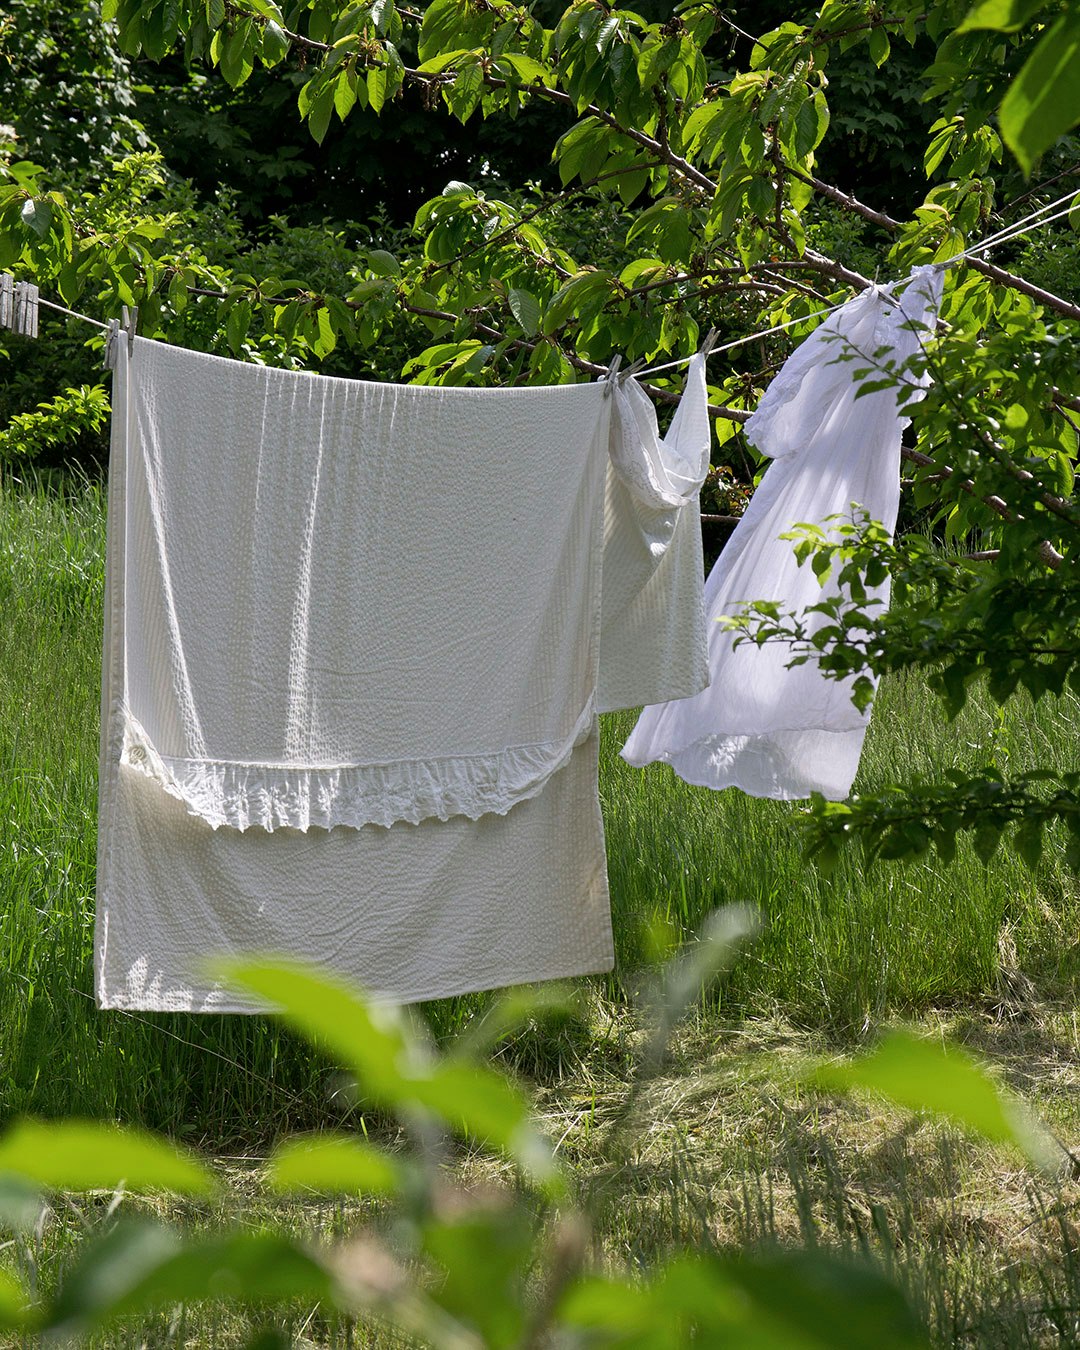 Strøget vasketøj på tørresnor i have